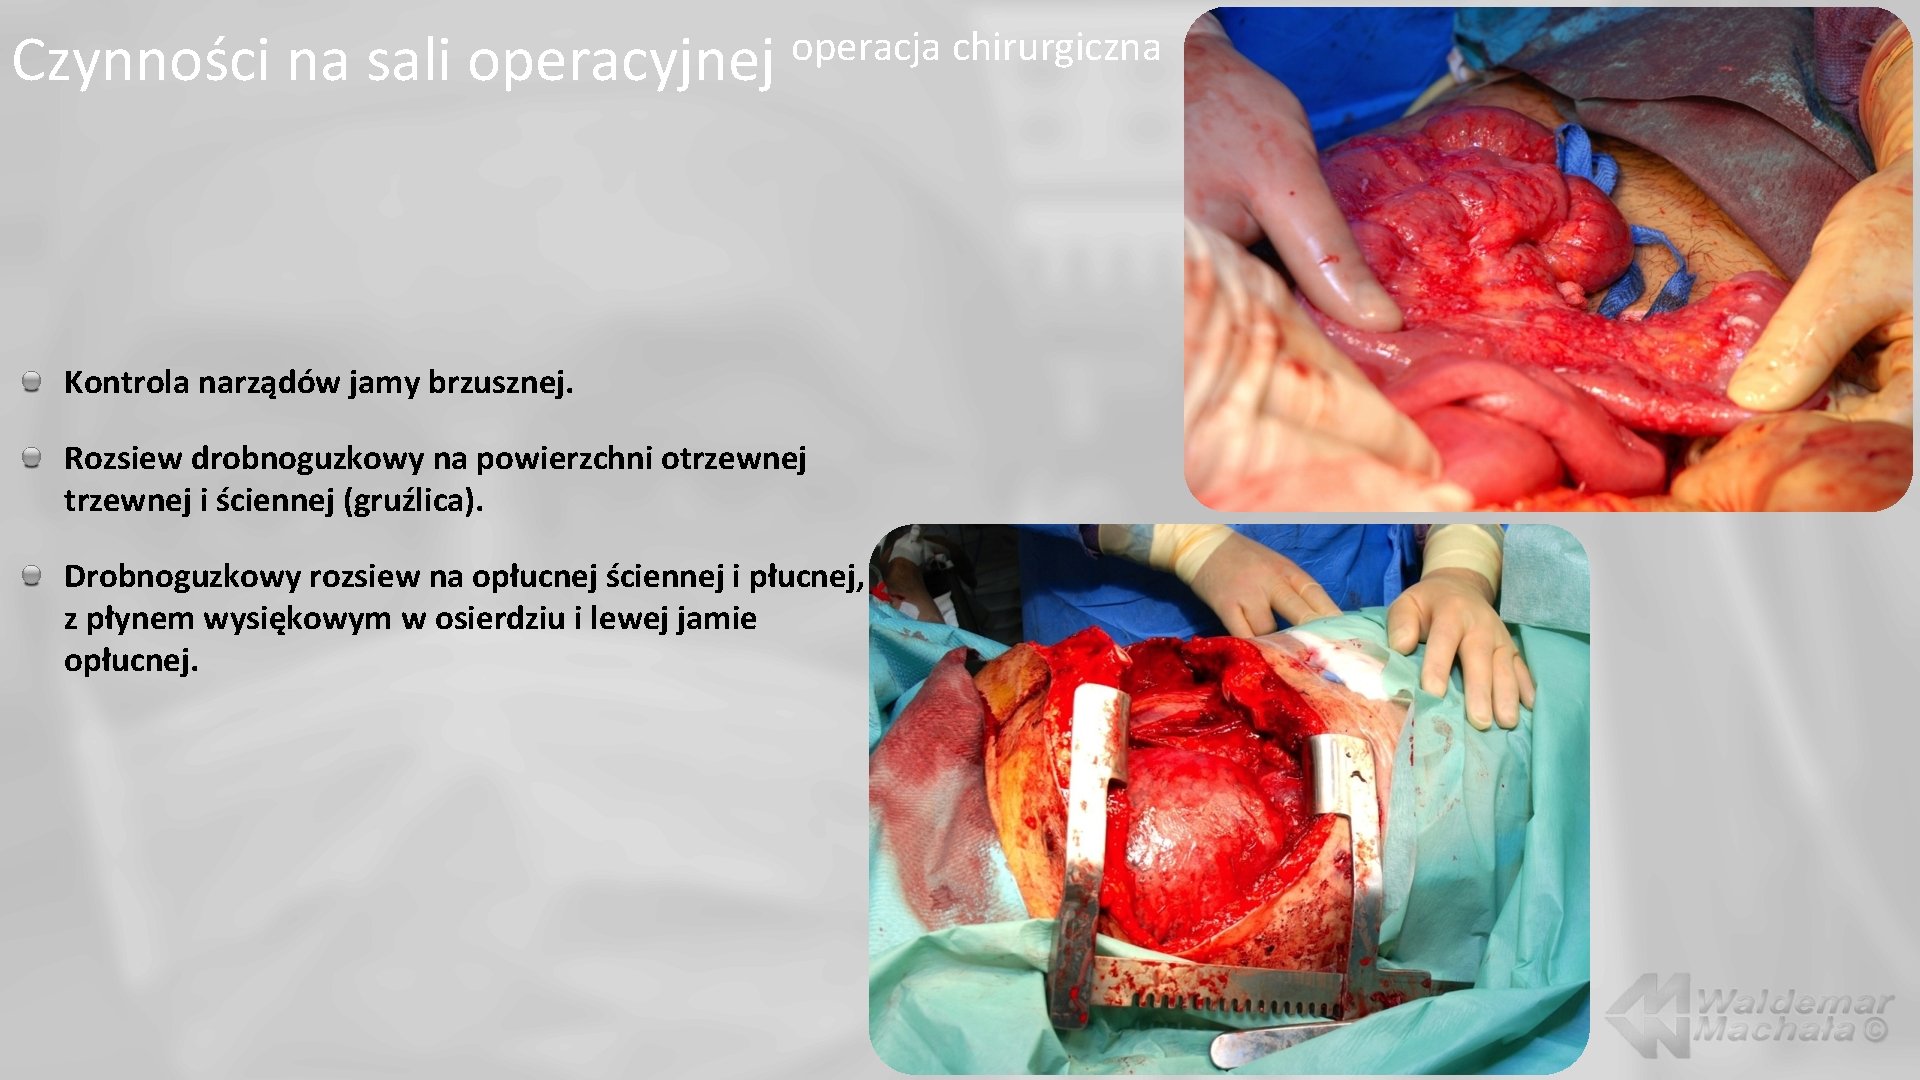 Czynności na sali operacyjnej operacja chirurgiczna Kontrola narządów jamy brzusznej. Rozsiew drobnoguzkowy na powierzchni